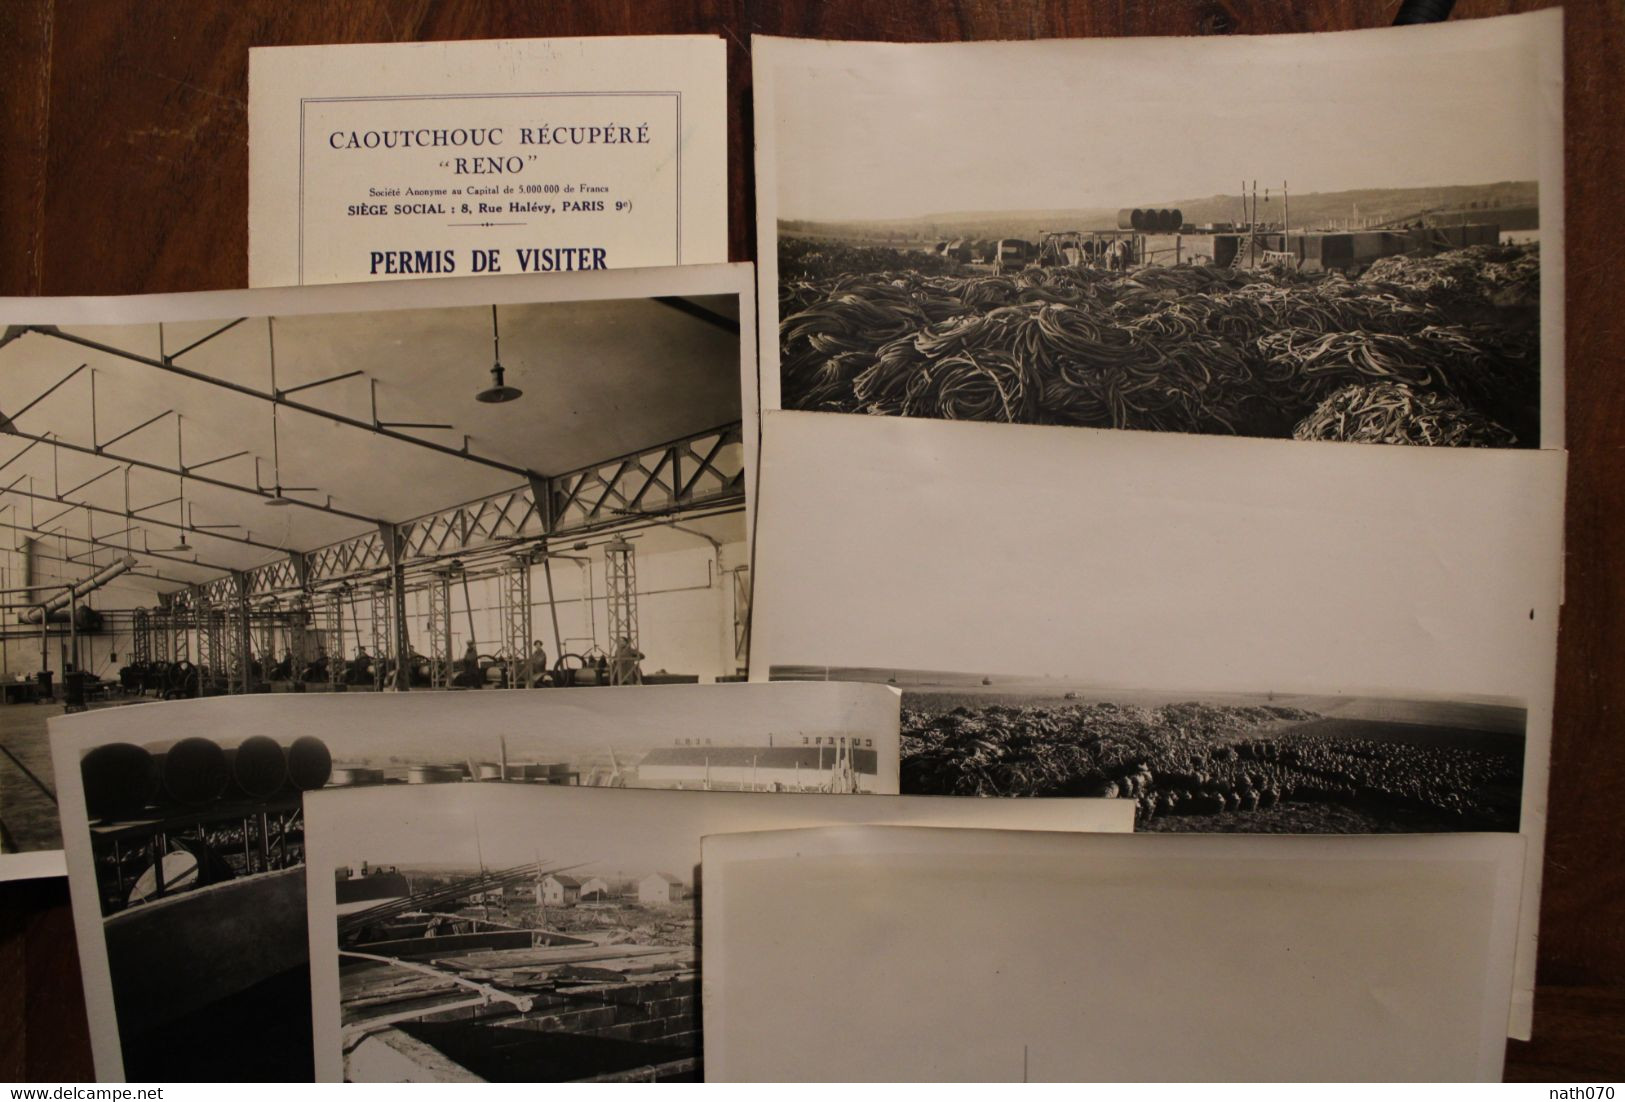 1928 Muizon (Marne) Usine RENO Caoutchouc Récupéré Lot De 6 Photos Dont Ouvrières + Carton Permis De Visiter Rare Lot ! - Mestieri